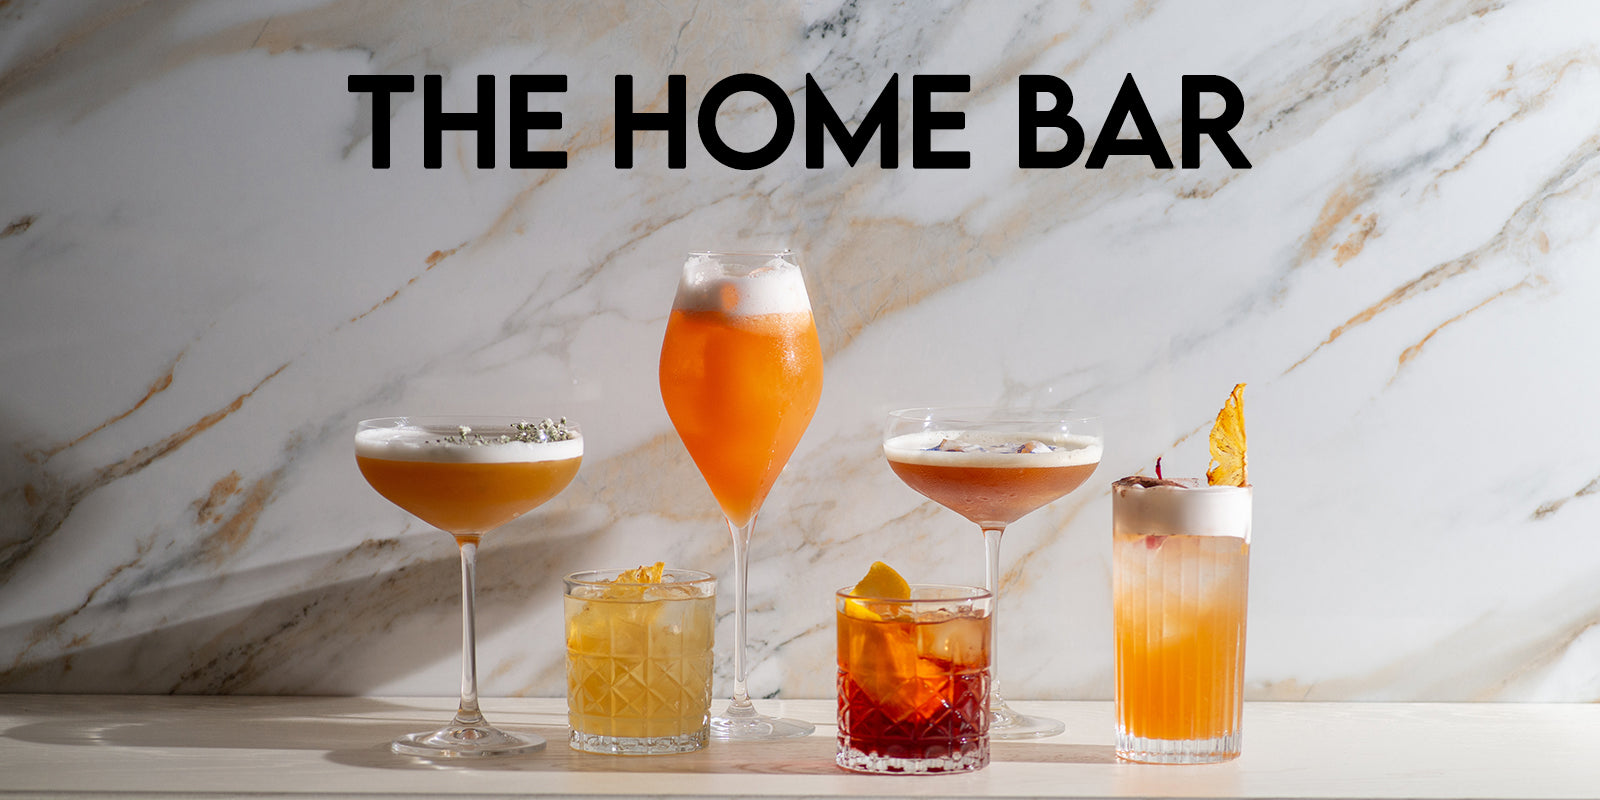 Home Bar: Get Creative with Cocktails & Mocktails!